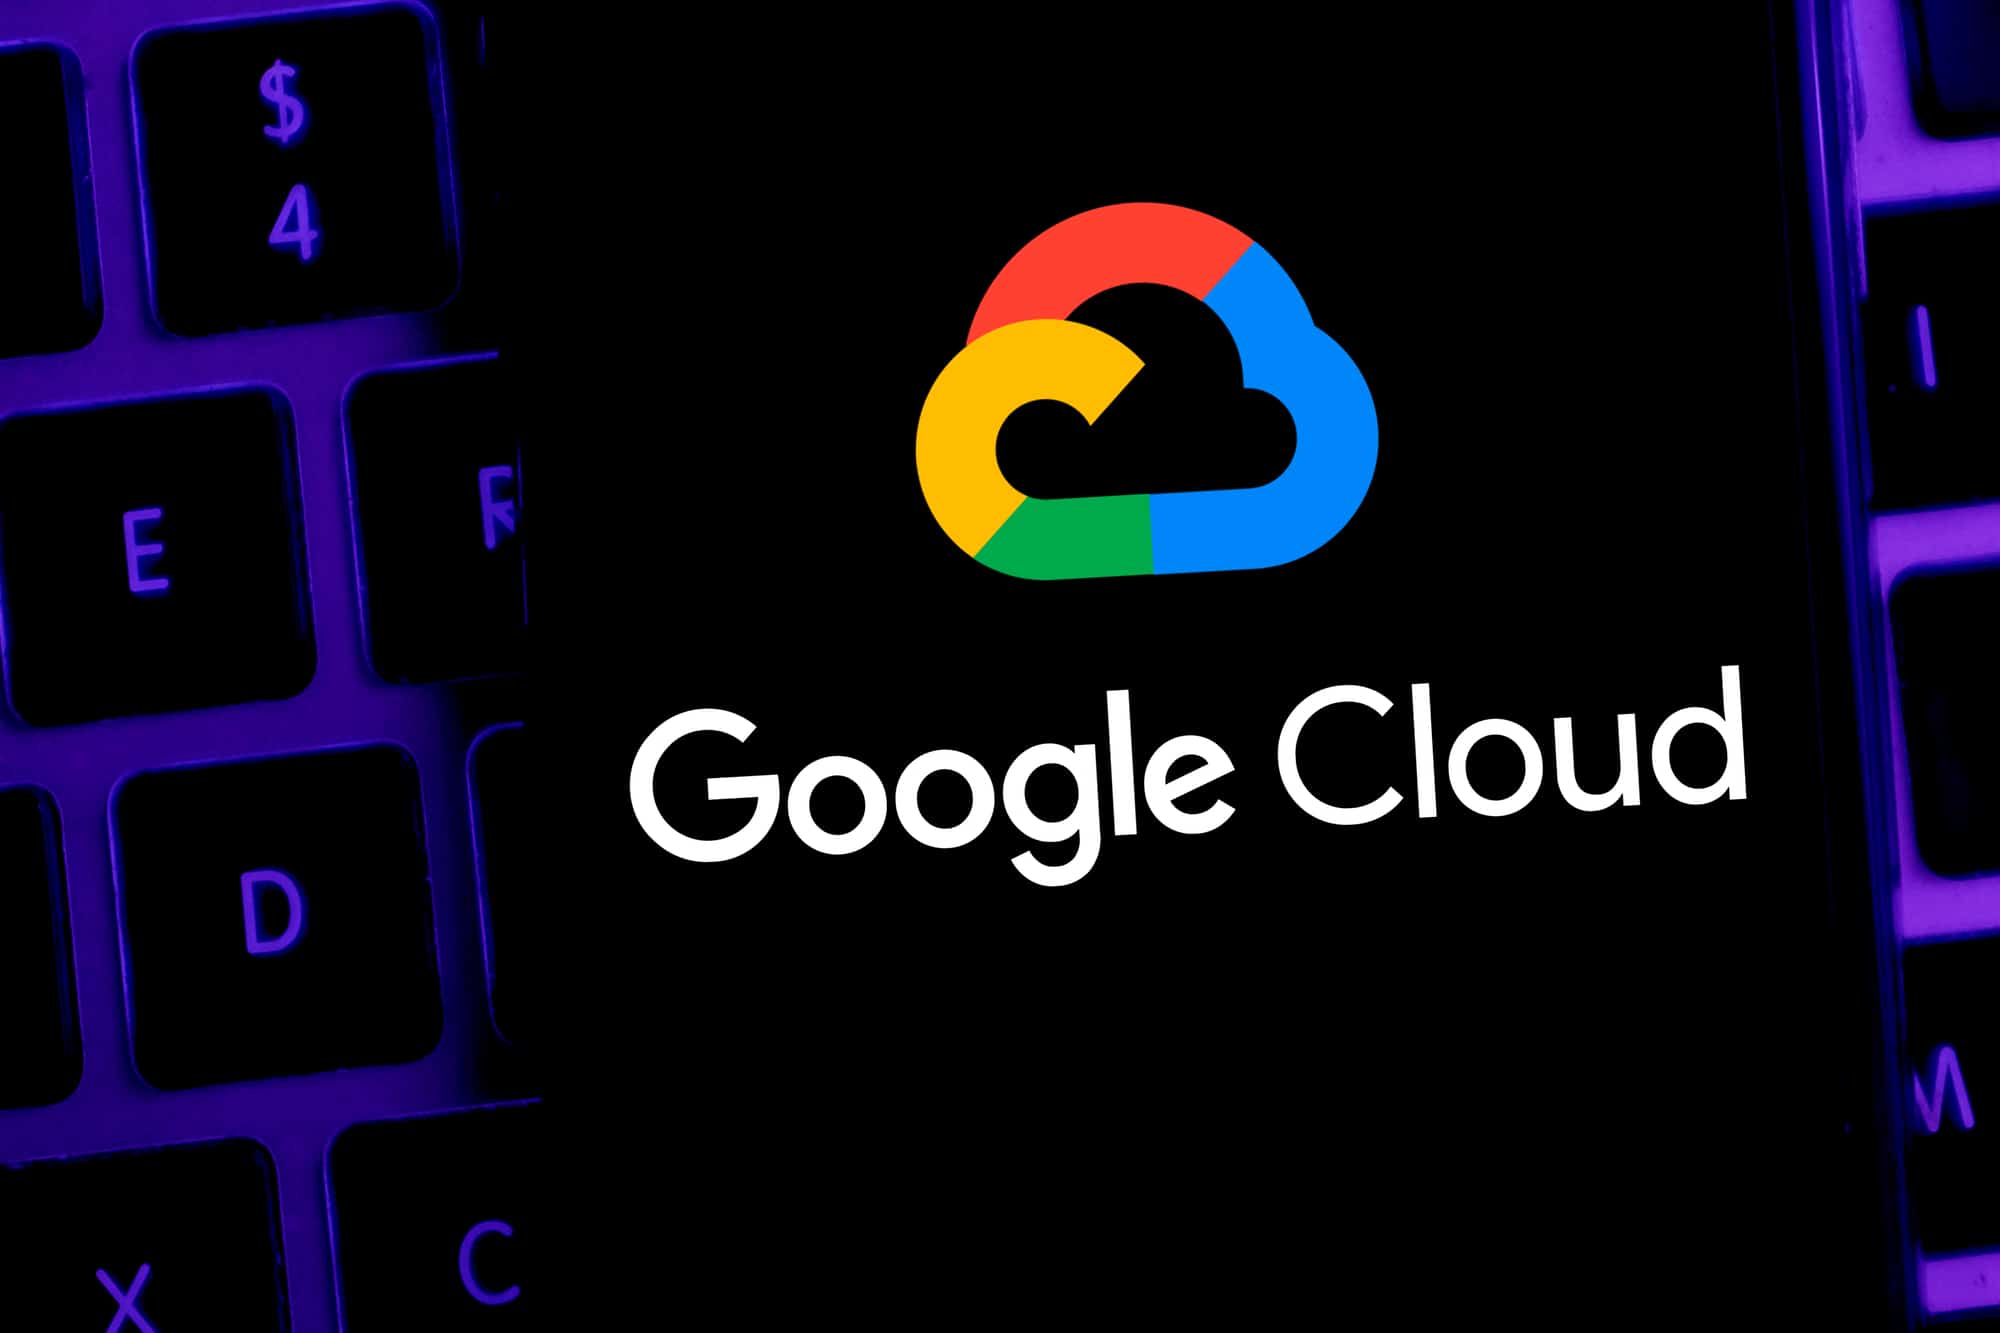 Google Cloud crea un team per realizzare servizi per sviluppatori web3 thumbnail